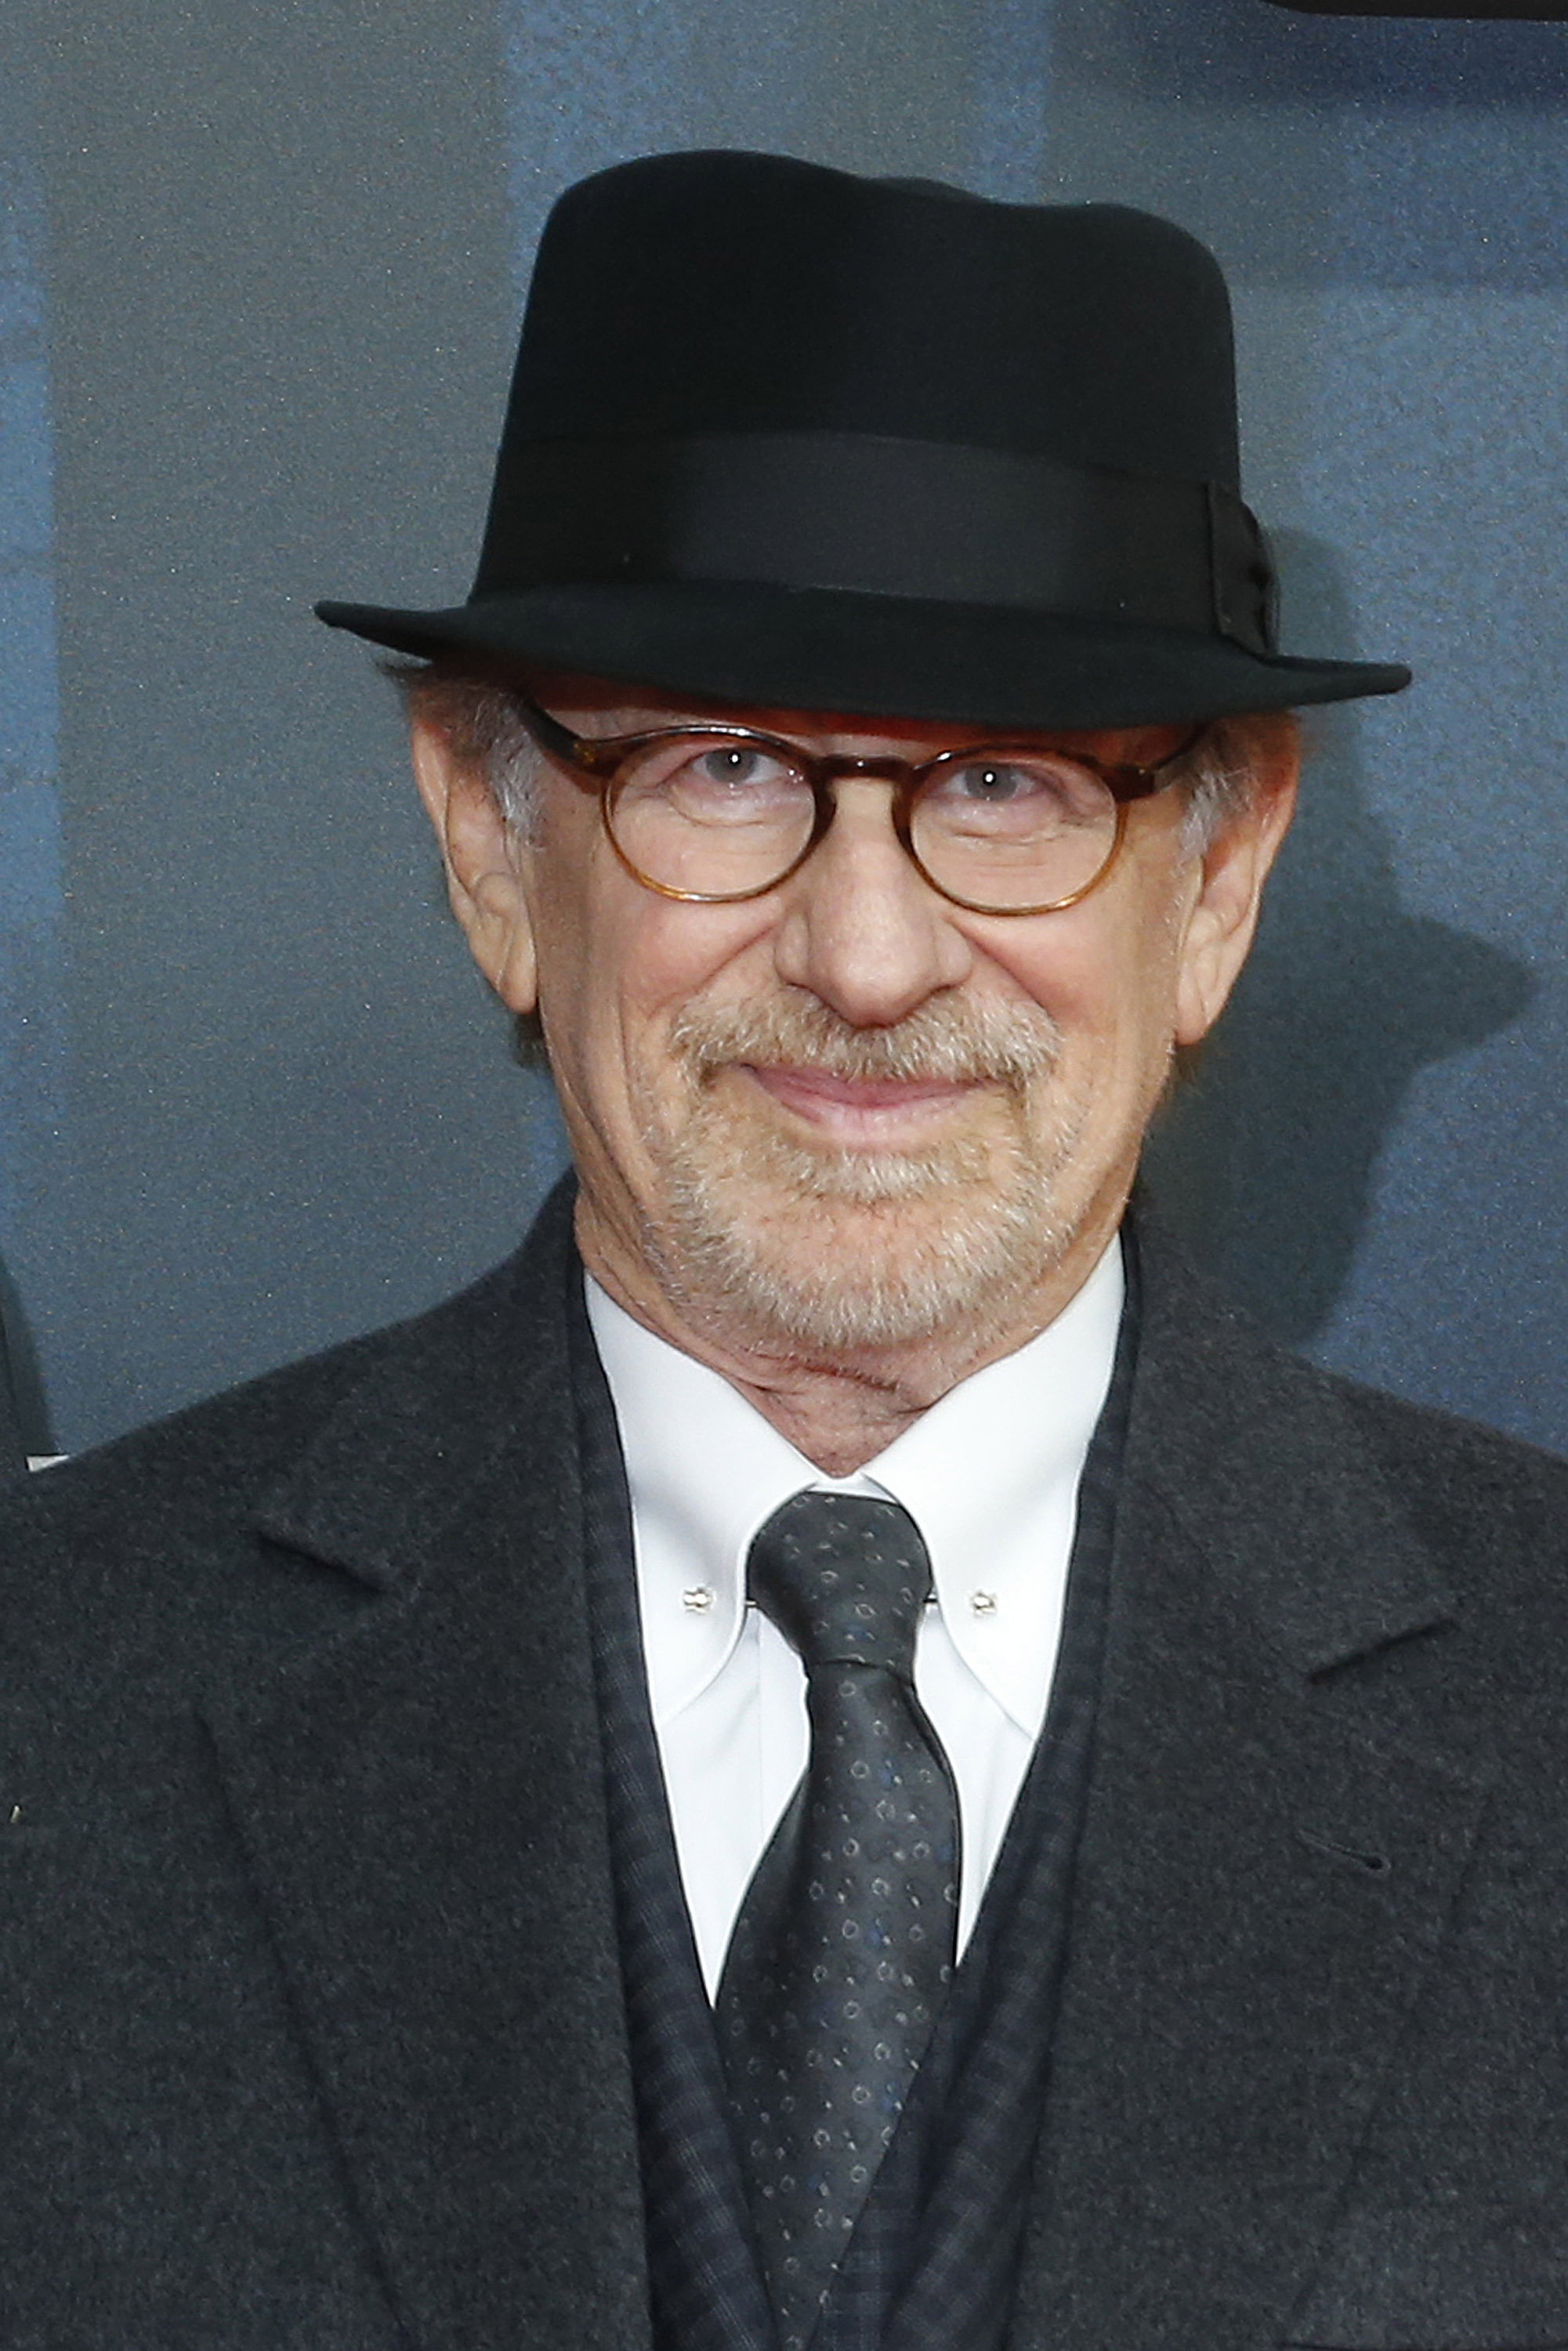 Steven Spielberg at the "Bridge of Spies - Der Unterhaendler" World Premiere in Berlin on Nov. 13, 2015.